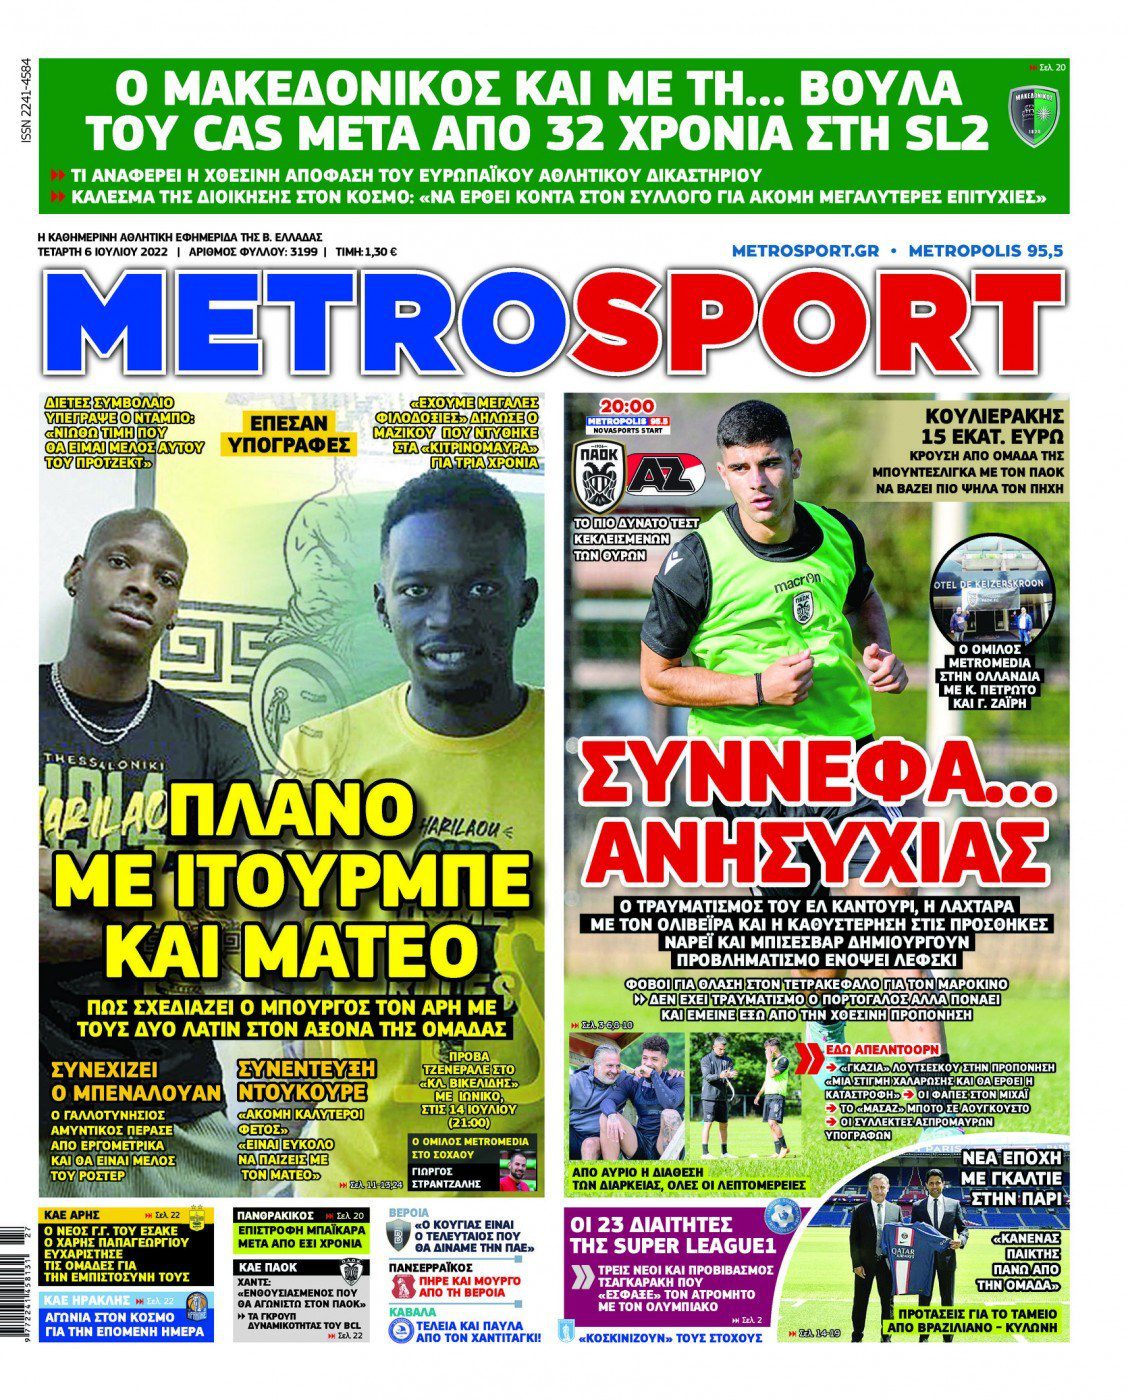 Πρωτοσέλιδα αθλητικών εφημερίδων για την Τετάρτη 5 Ιουλίου 2022. Δείτε αναλυτικά τι αναφέρουν στη… βιτρίνα τους οι εφημερίδες.